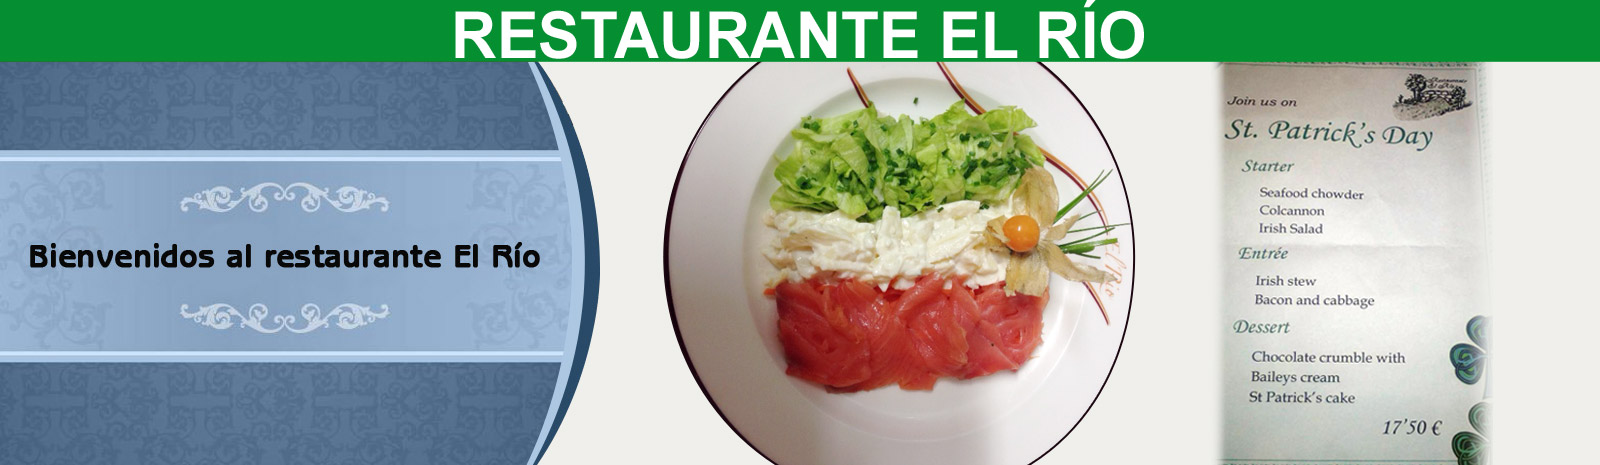 Restaurante El Rio